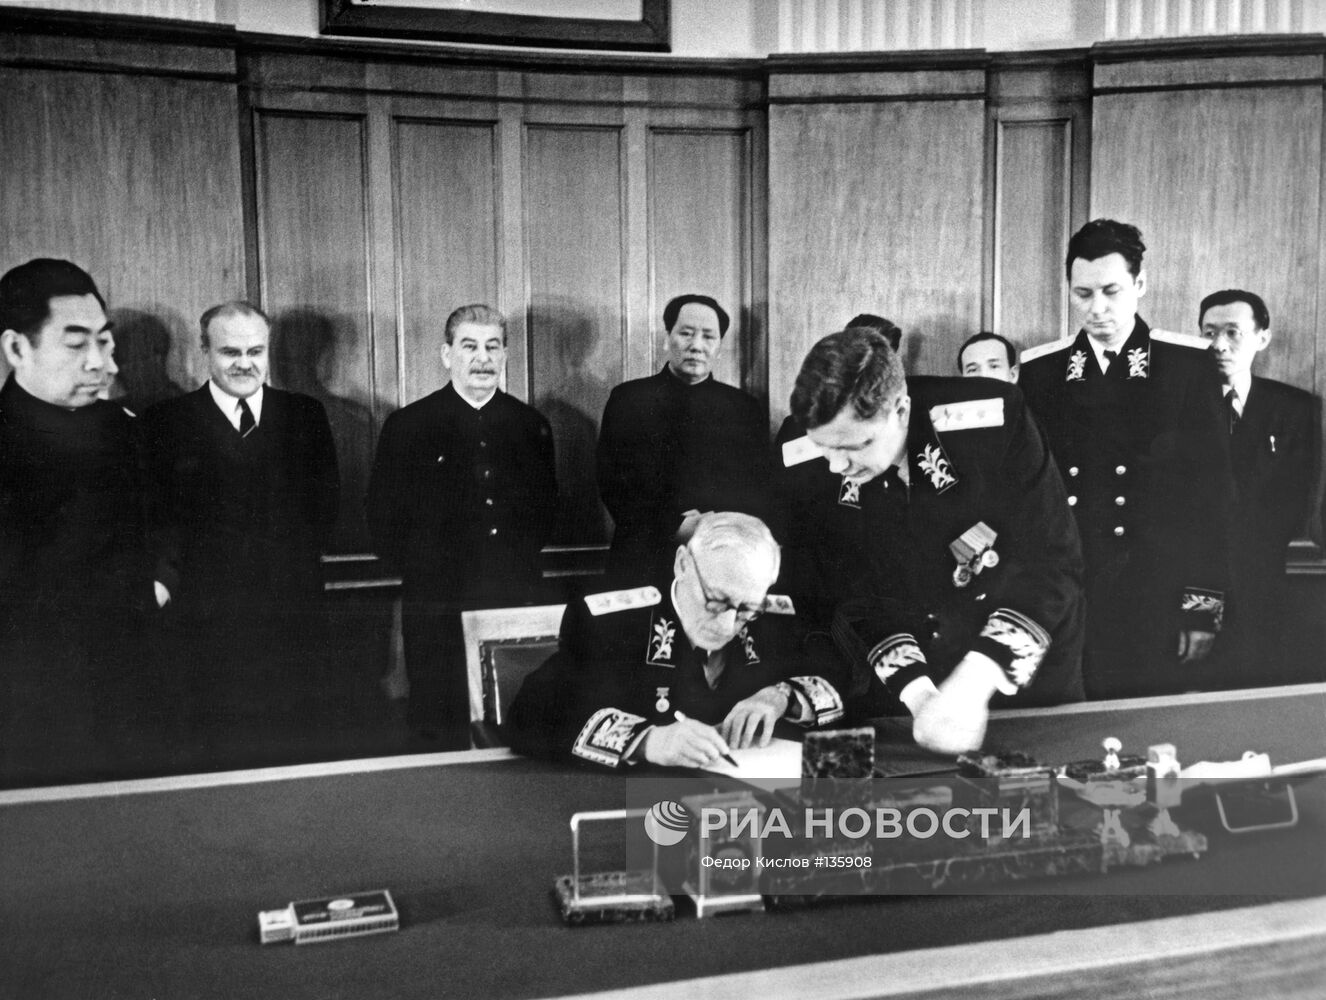 Подписание Договора о дружбе, союзе и взаимопонимании между СССР и КНР